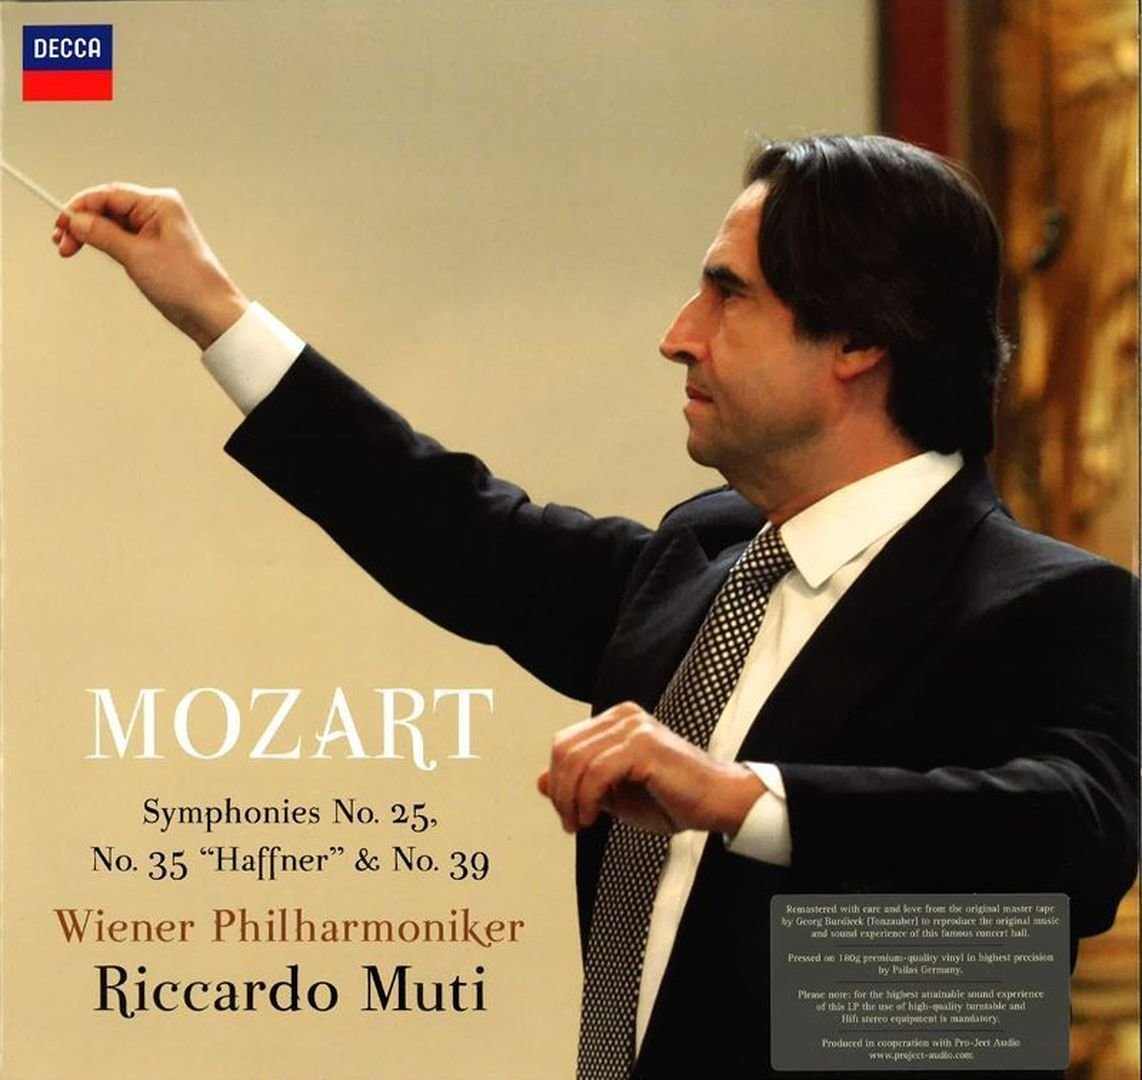 Disque vinyle Riccardo Muti Mozart Symphonies Nr. 25, 35, 39 (2 LP)